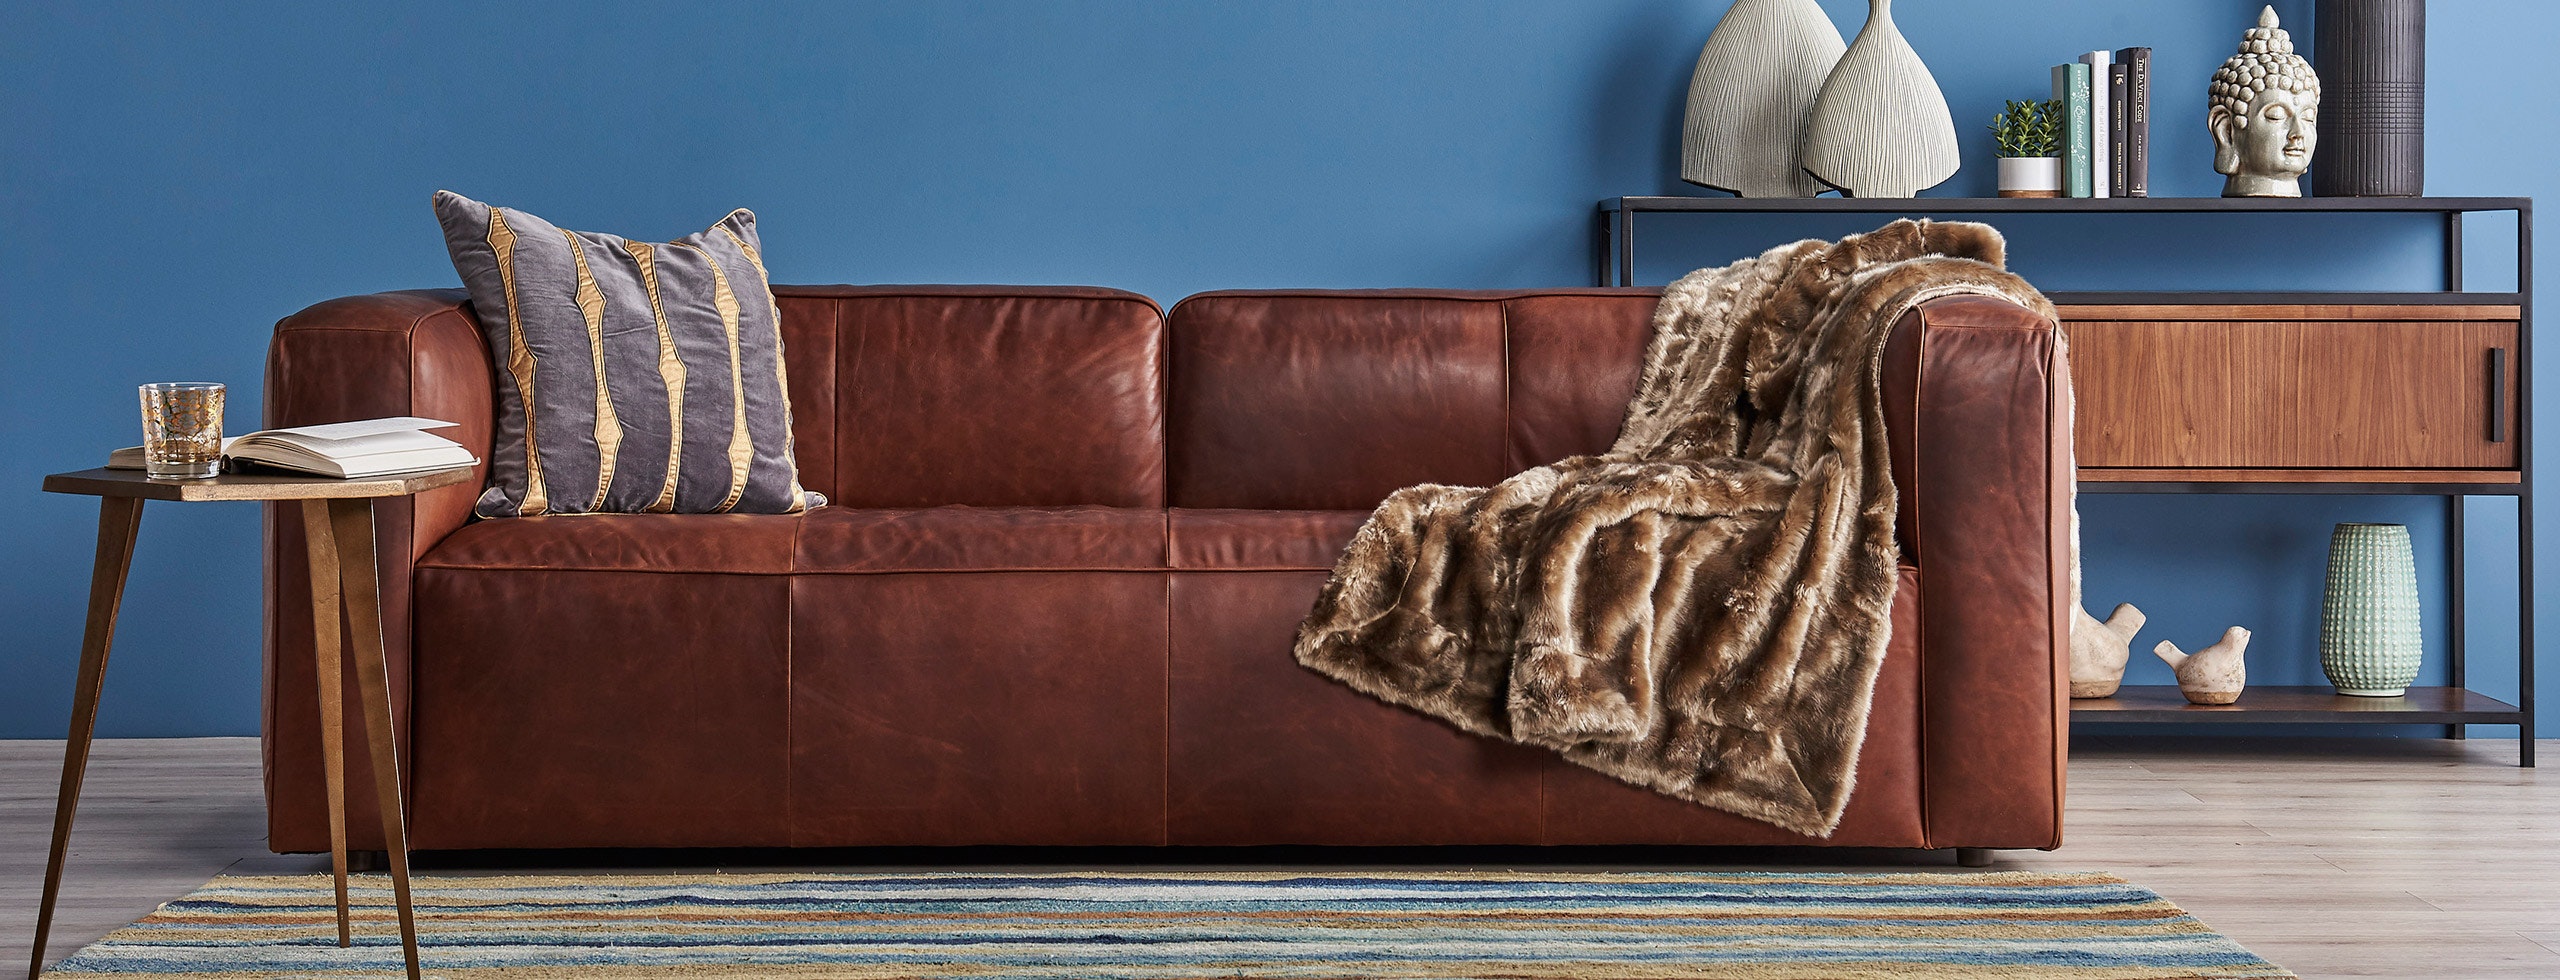 joybird logan leather sofa